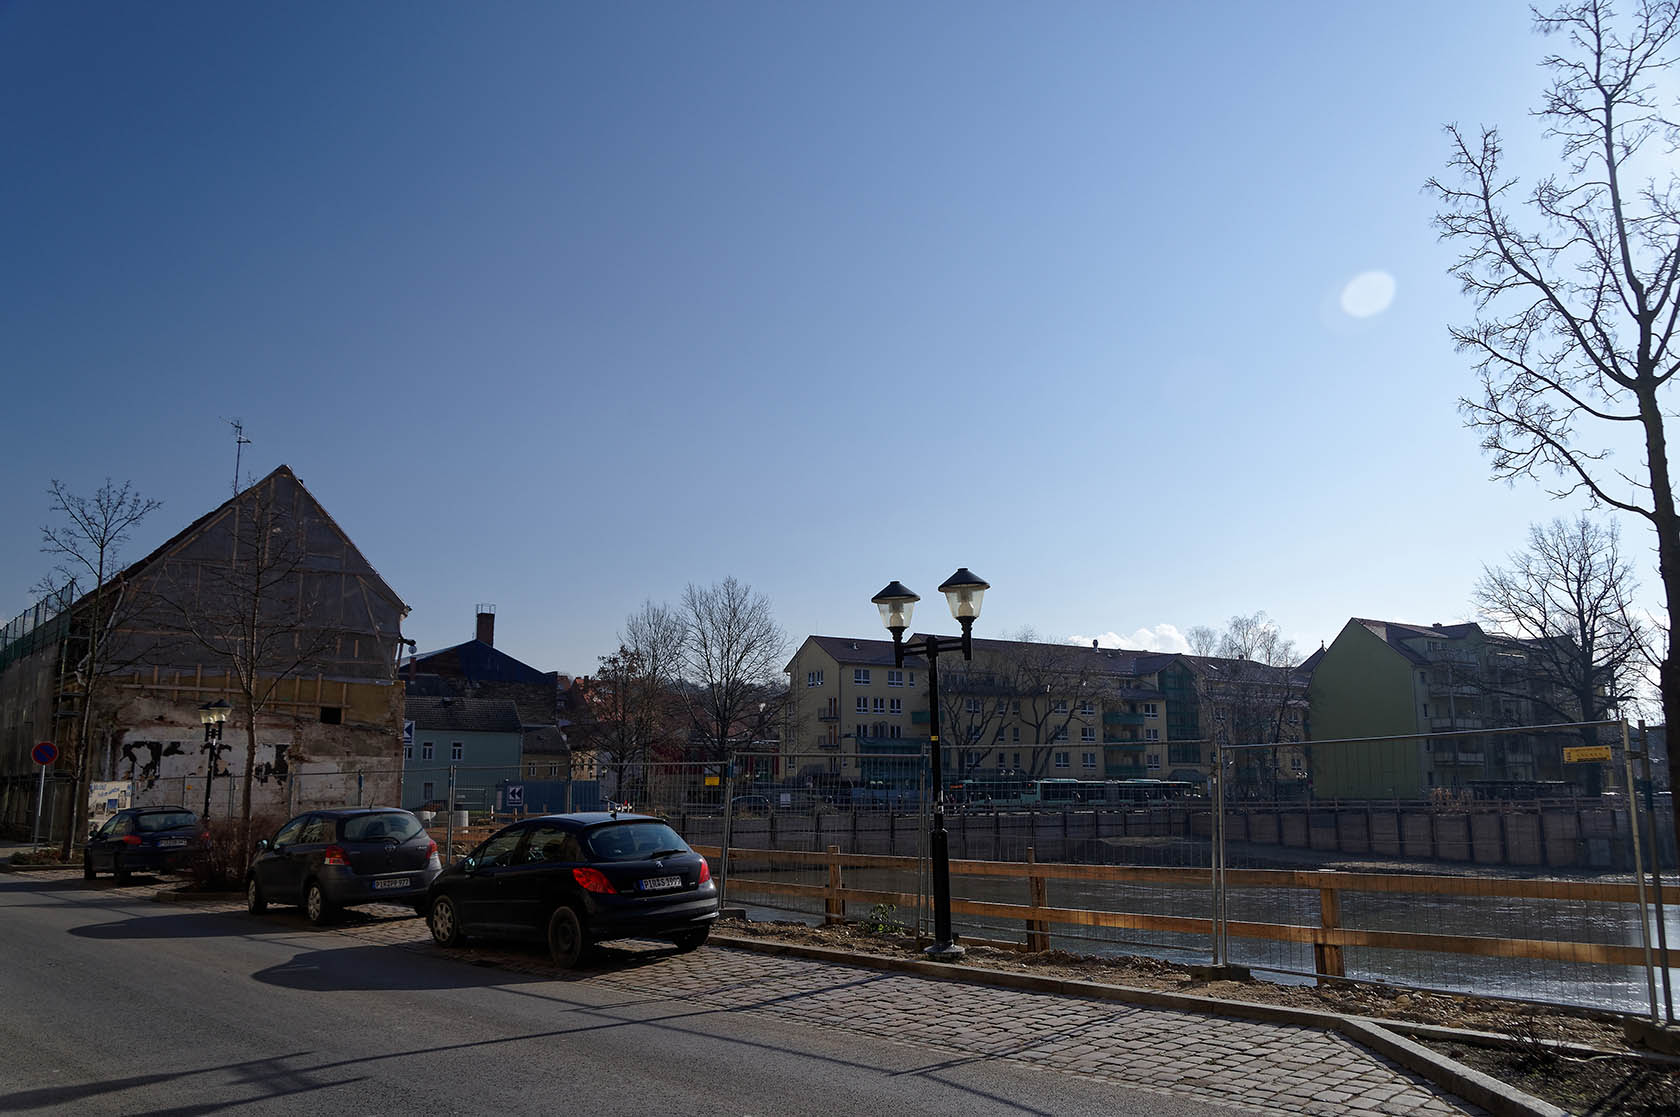 SCheunenhof, Ansicht Bahnhofstrae,
              Februar 2018